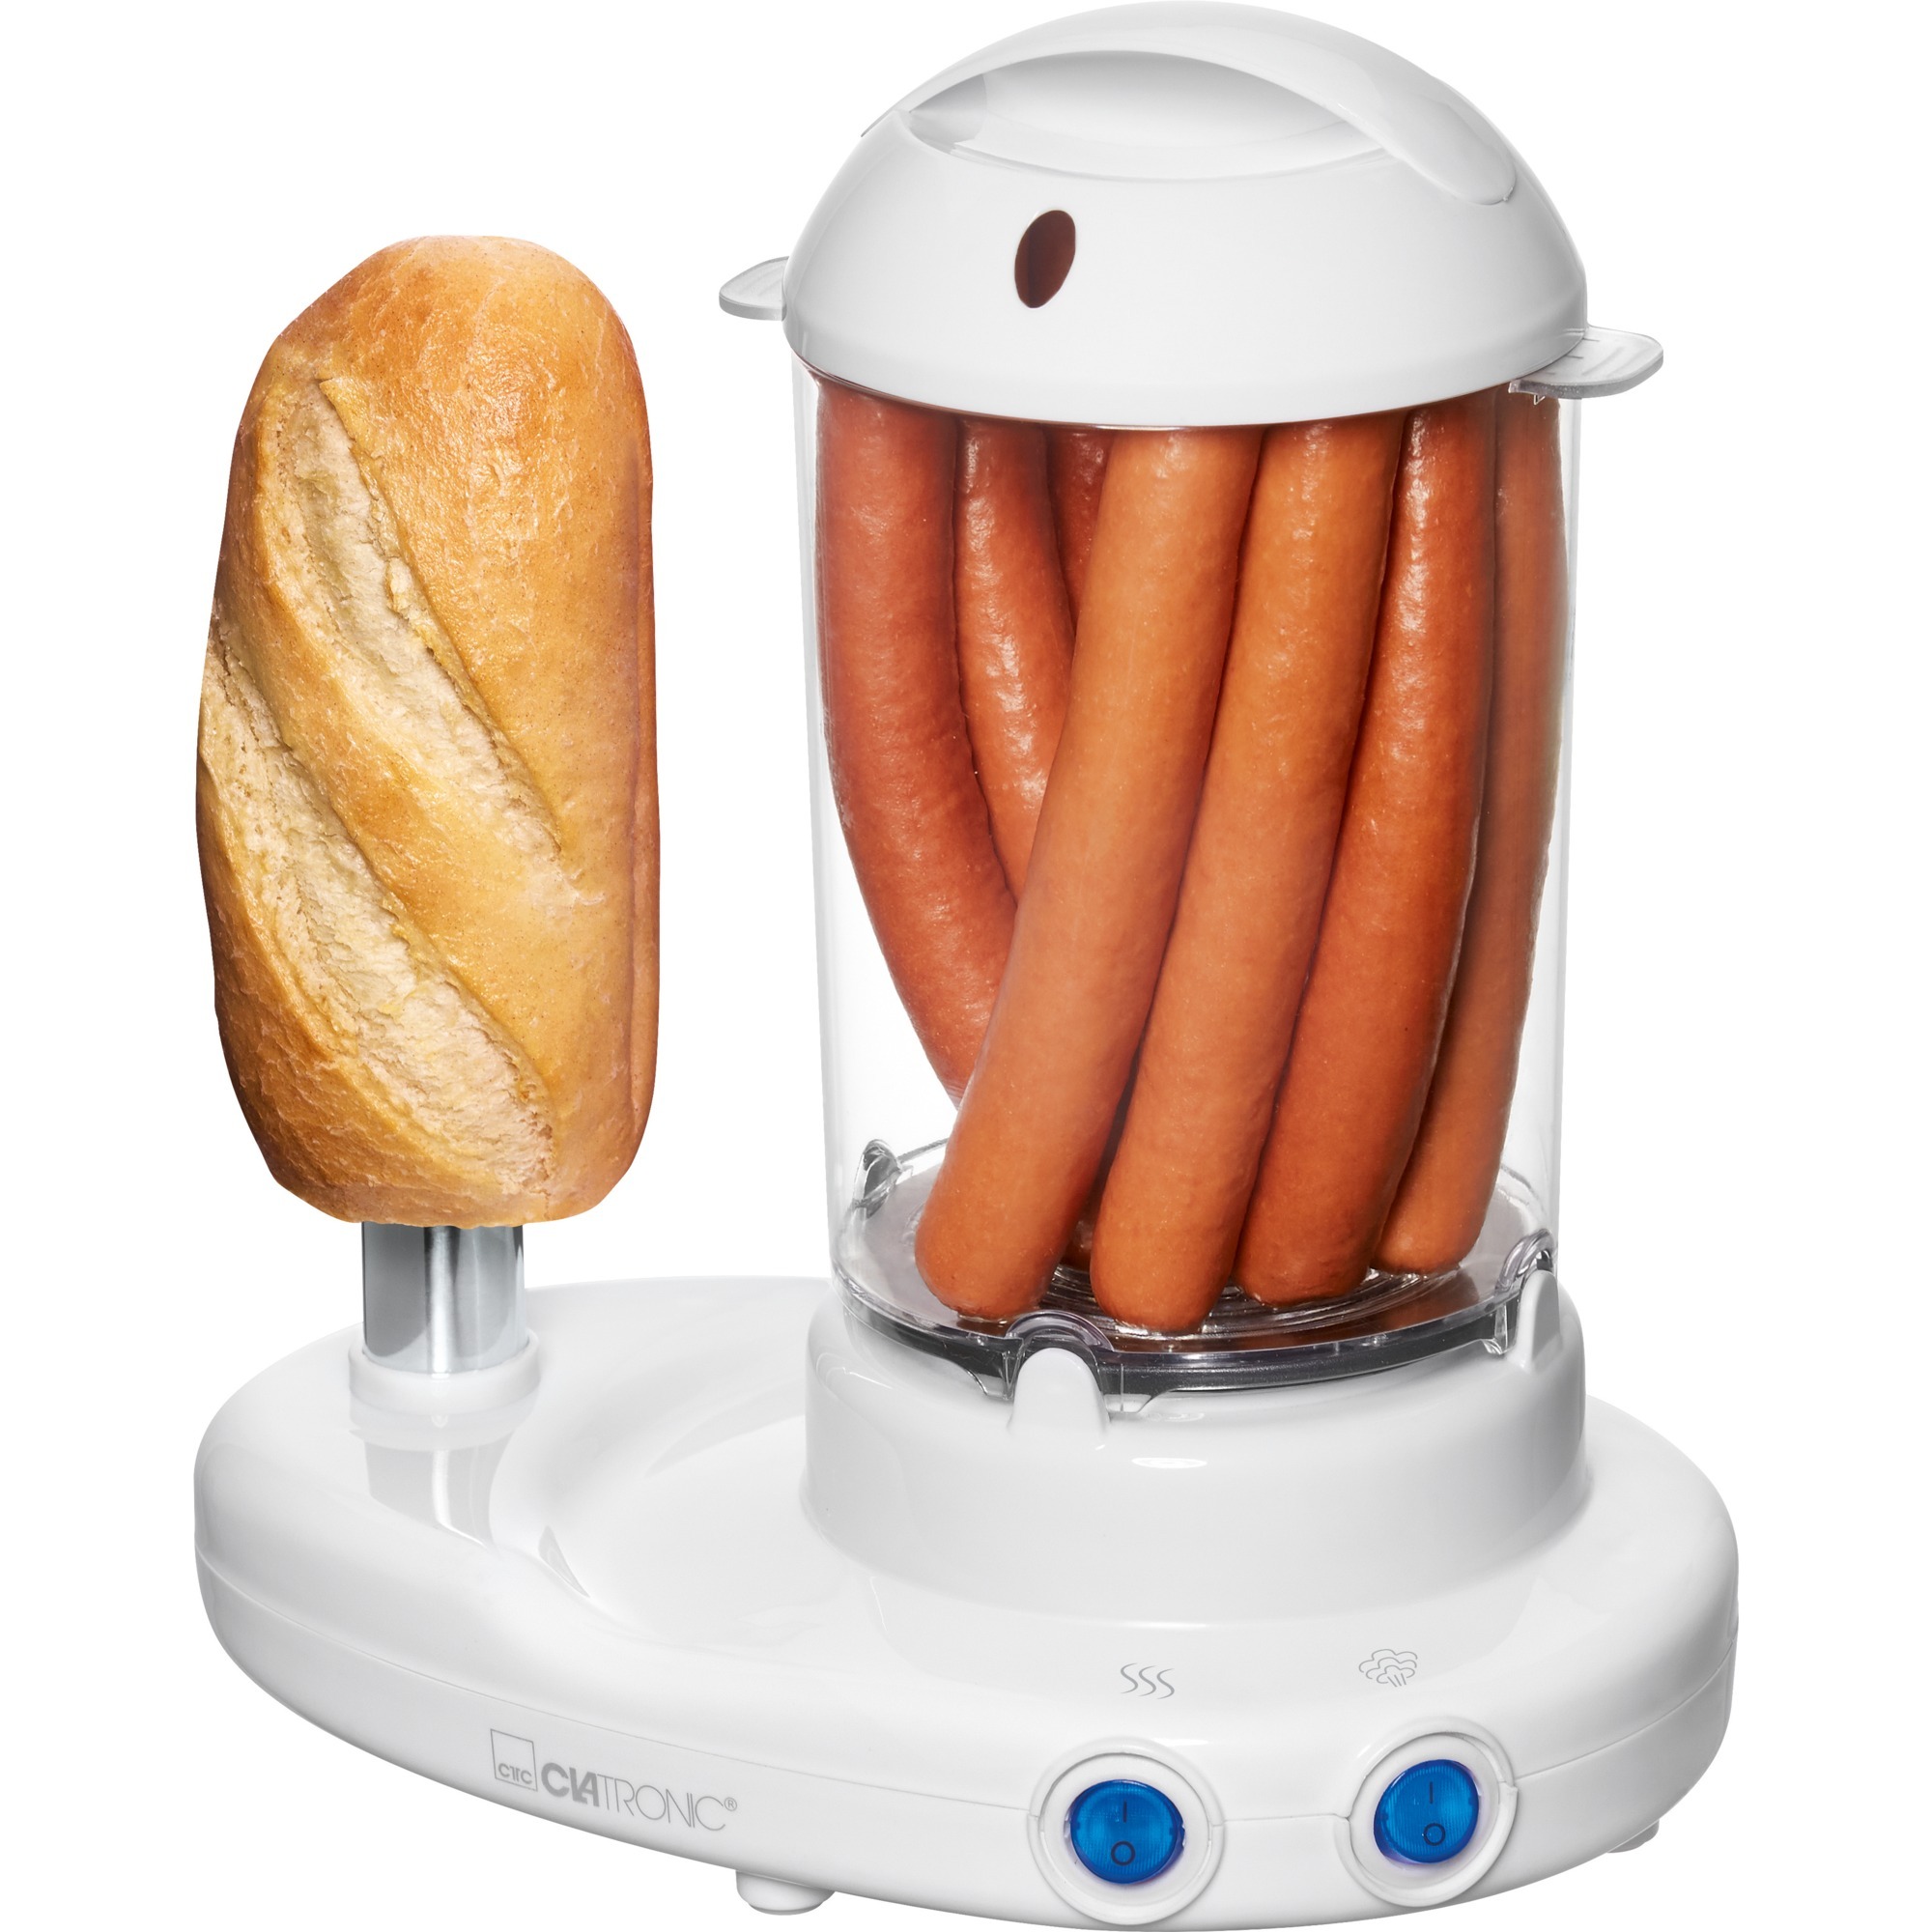 Image of Alternate - Hot Dog Maker inkl. Eierkocher 3420 EK N online einkaufen bei Alternate